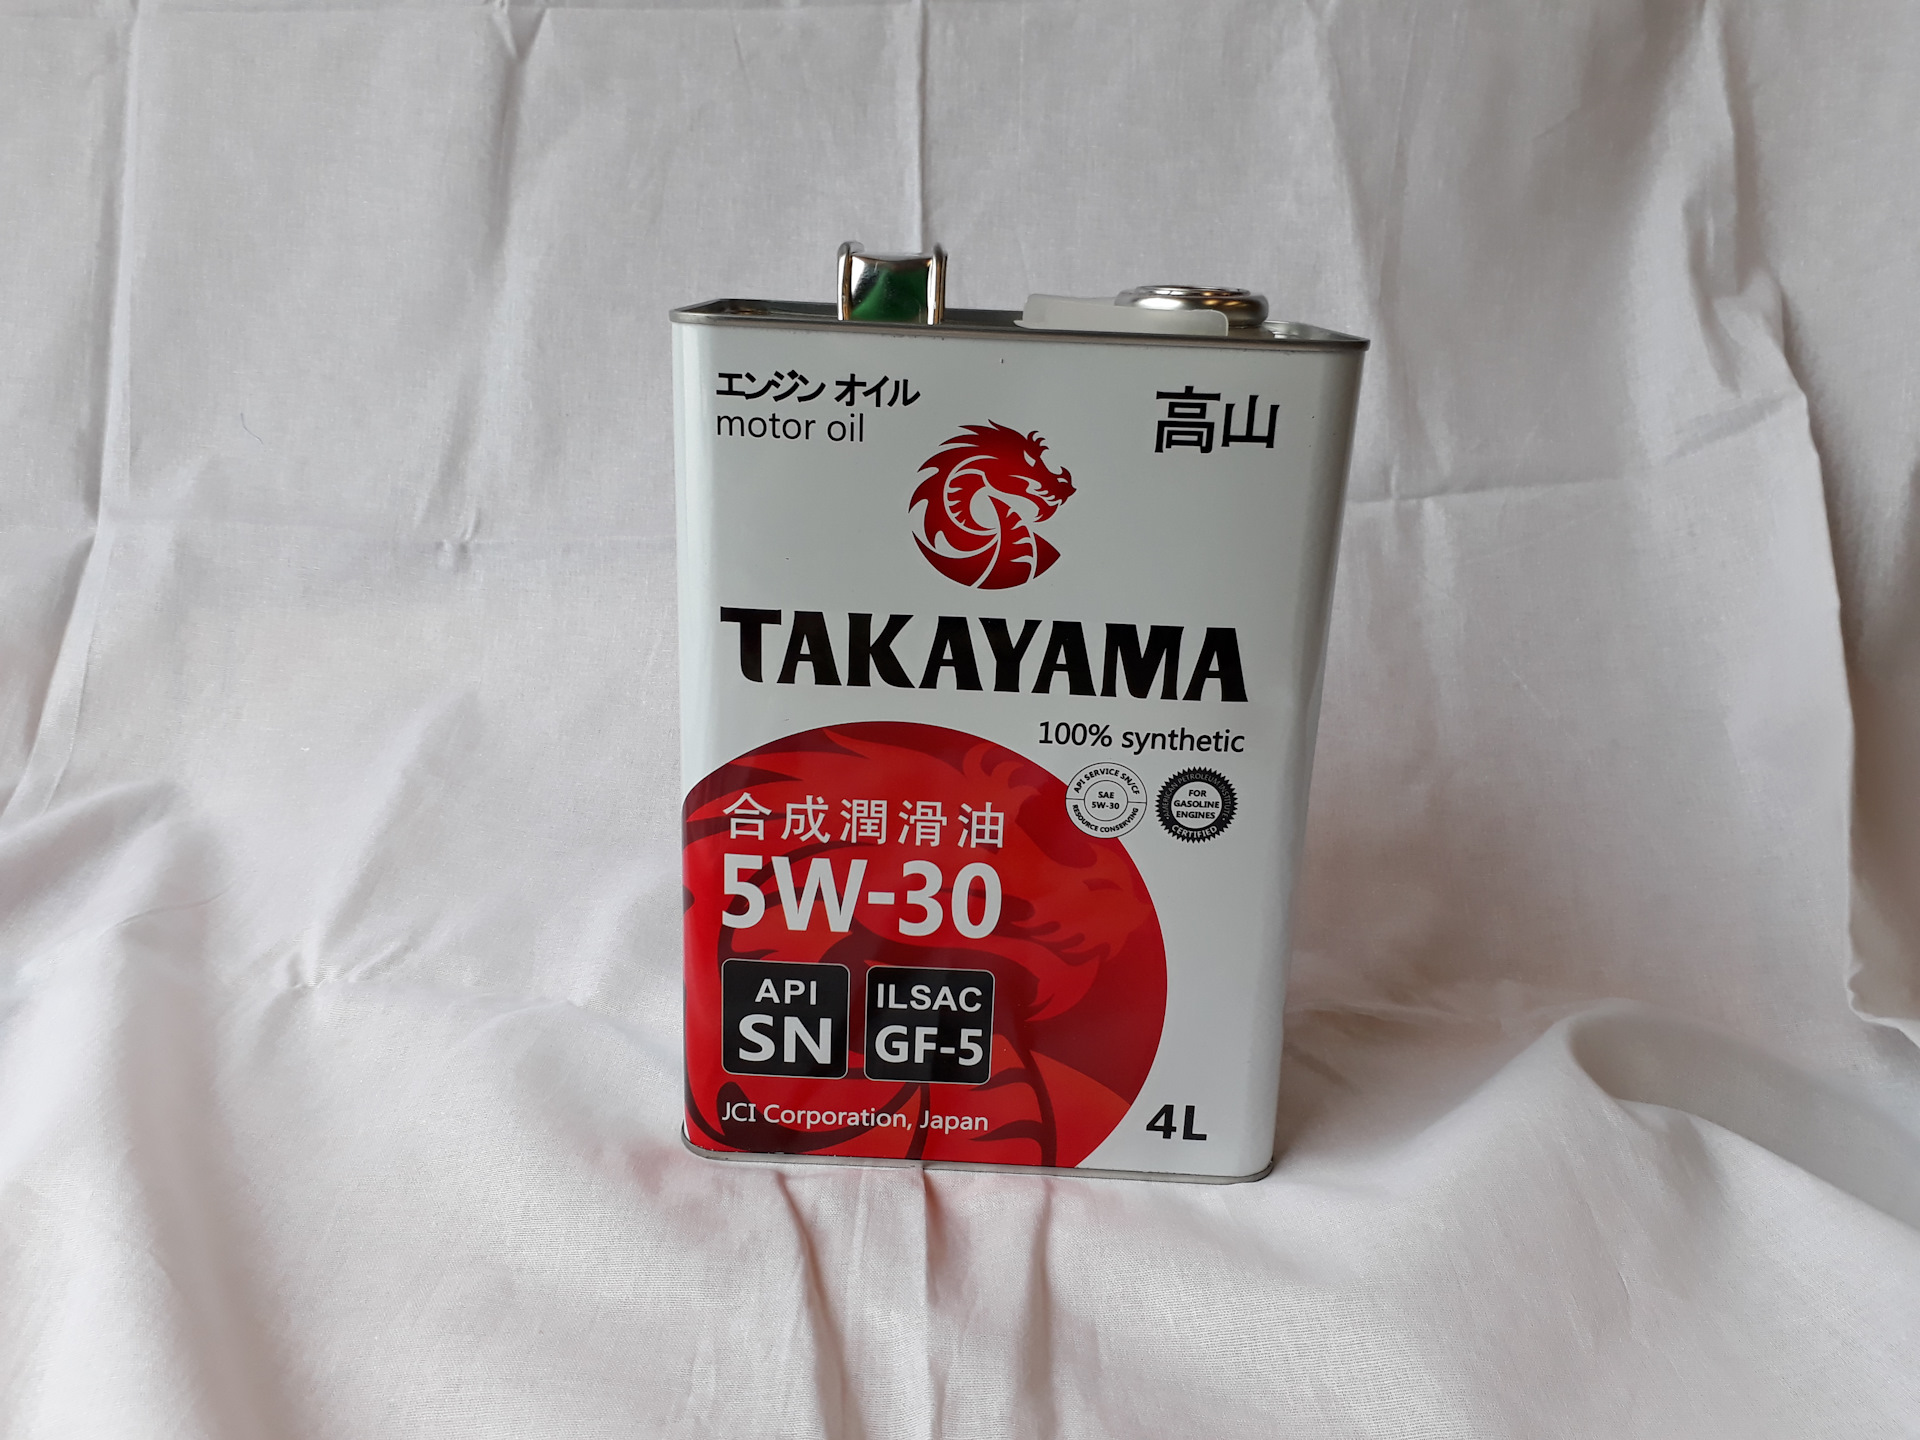 Японские масла для авто. Японское моторное масло Takayama. Японское моторное масло в железных банках. Японское масло в железной канистре. Машинное масло японское Токояма.